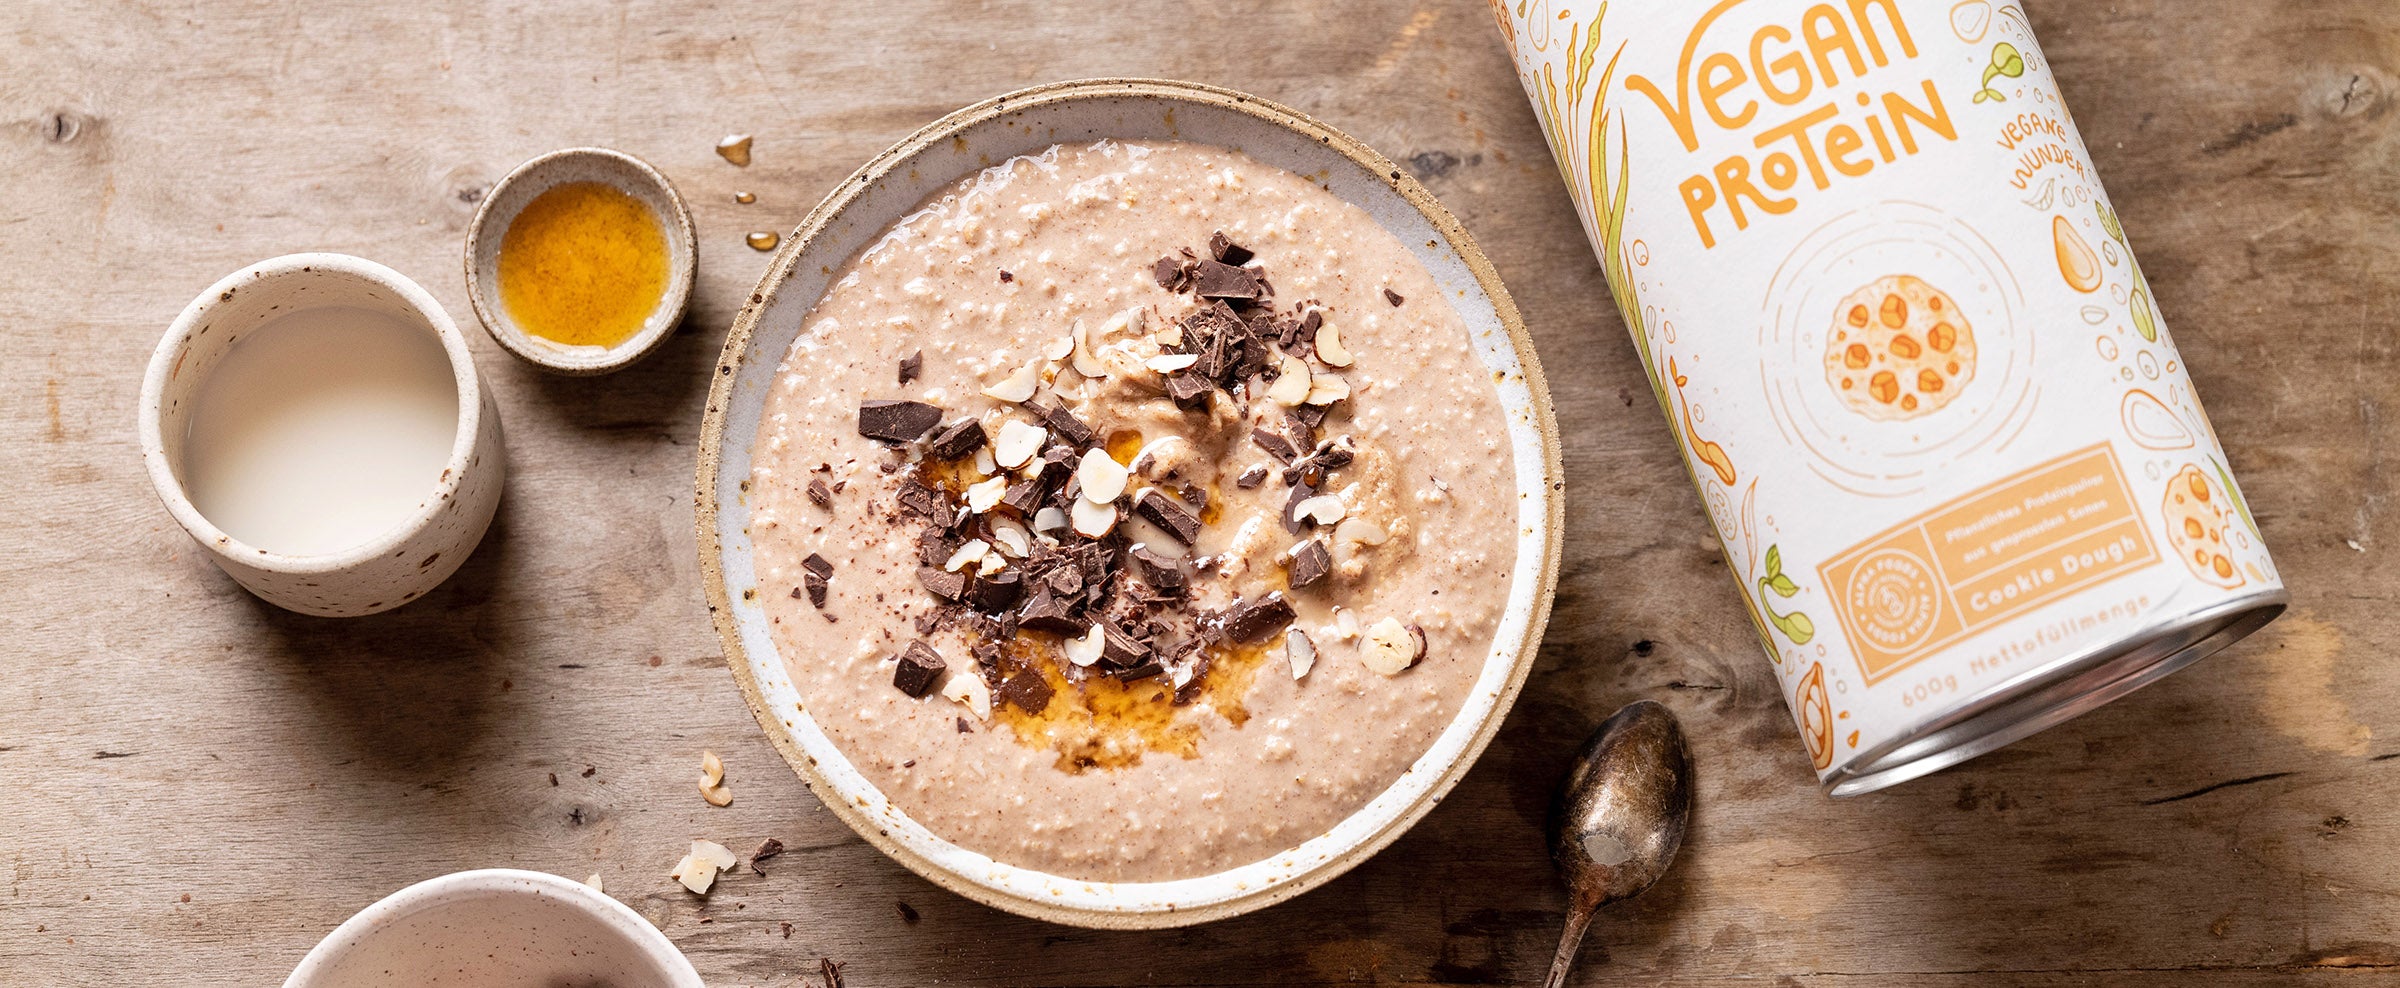 Das perfekte Frühstück: Keksteig-Protein-Porridge